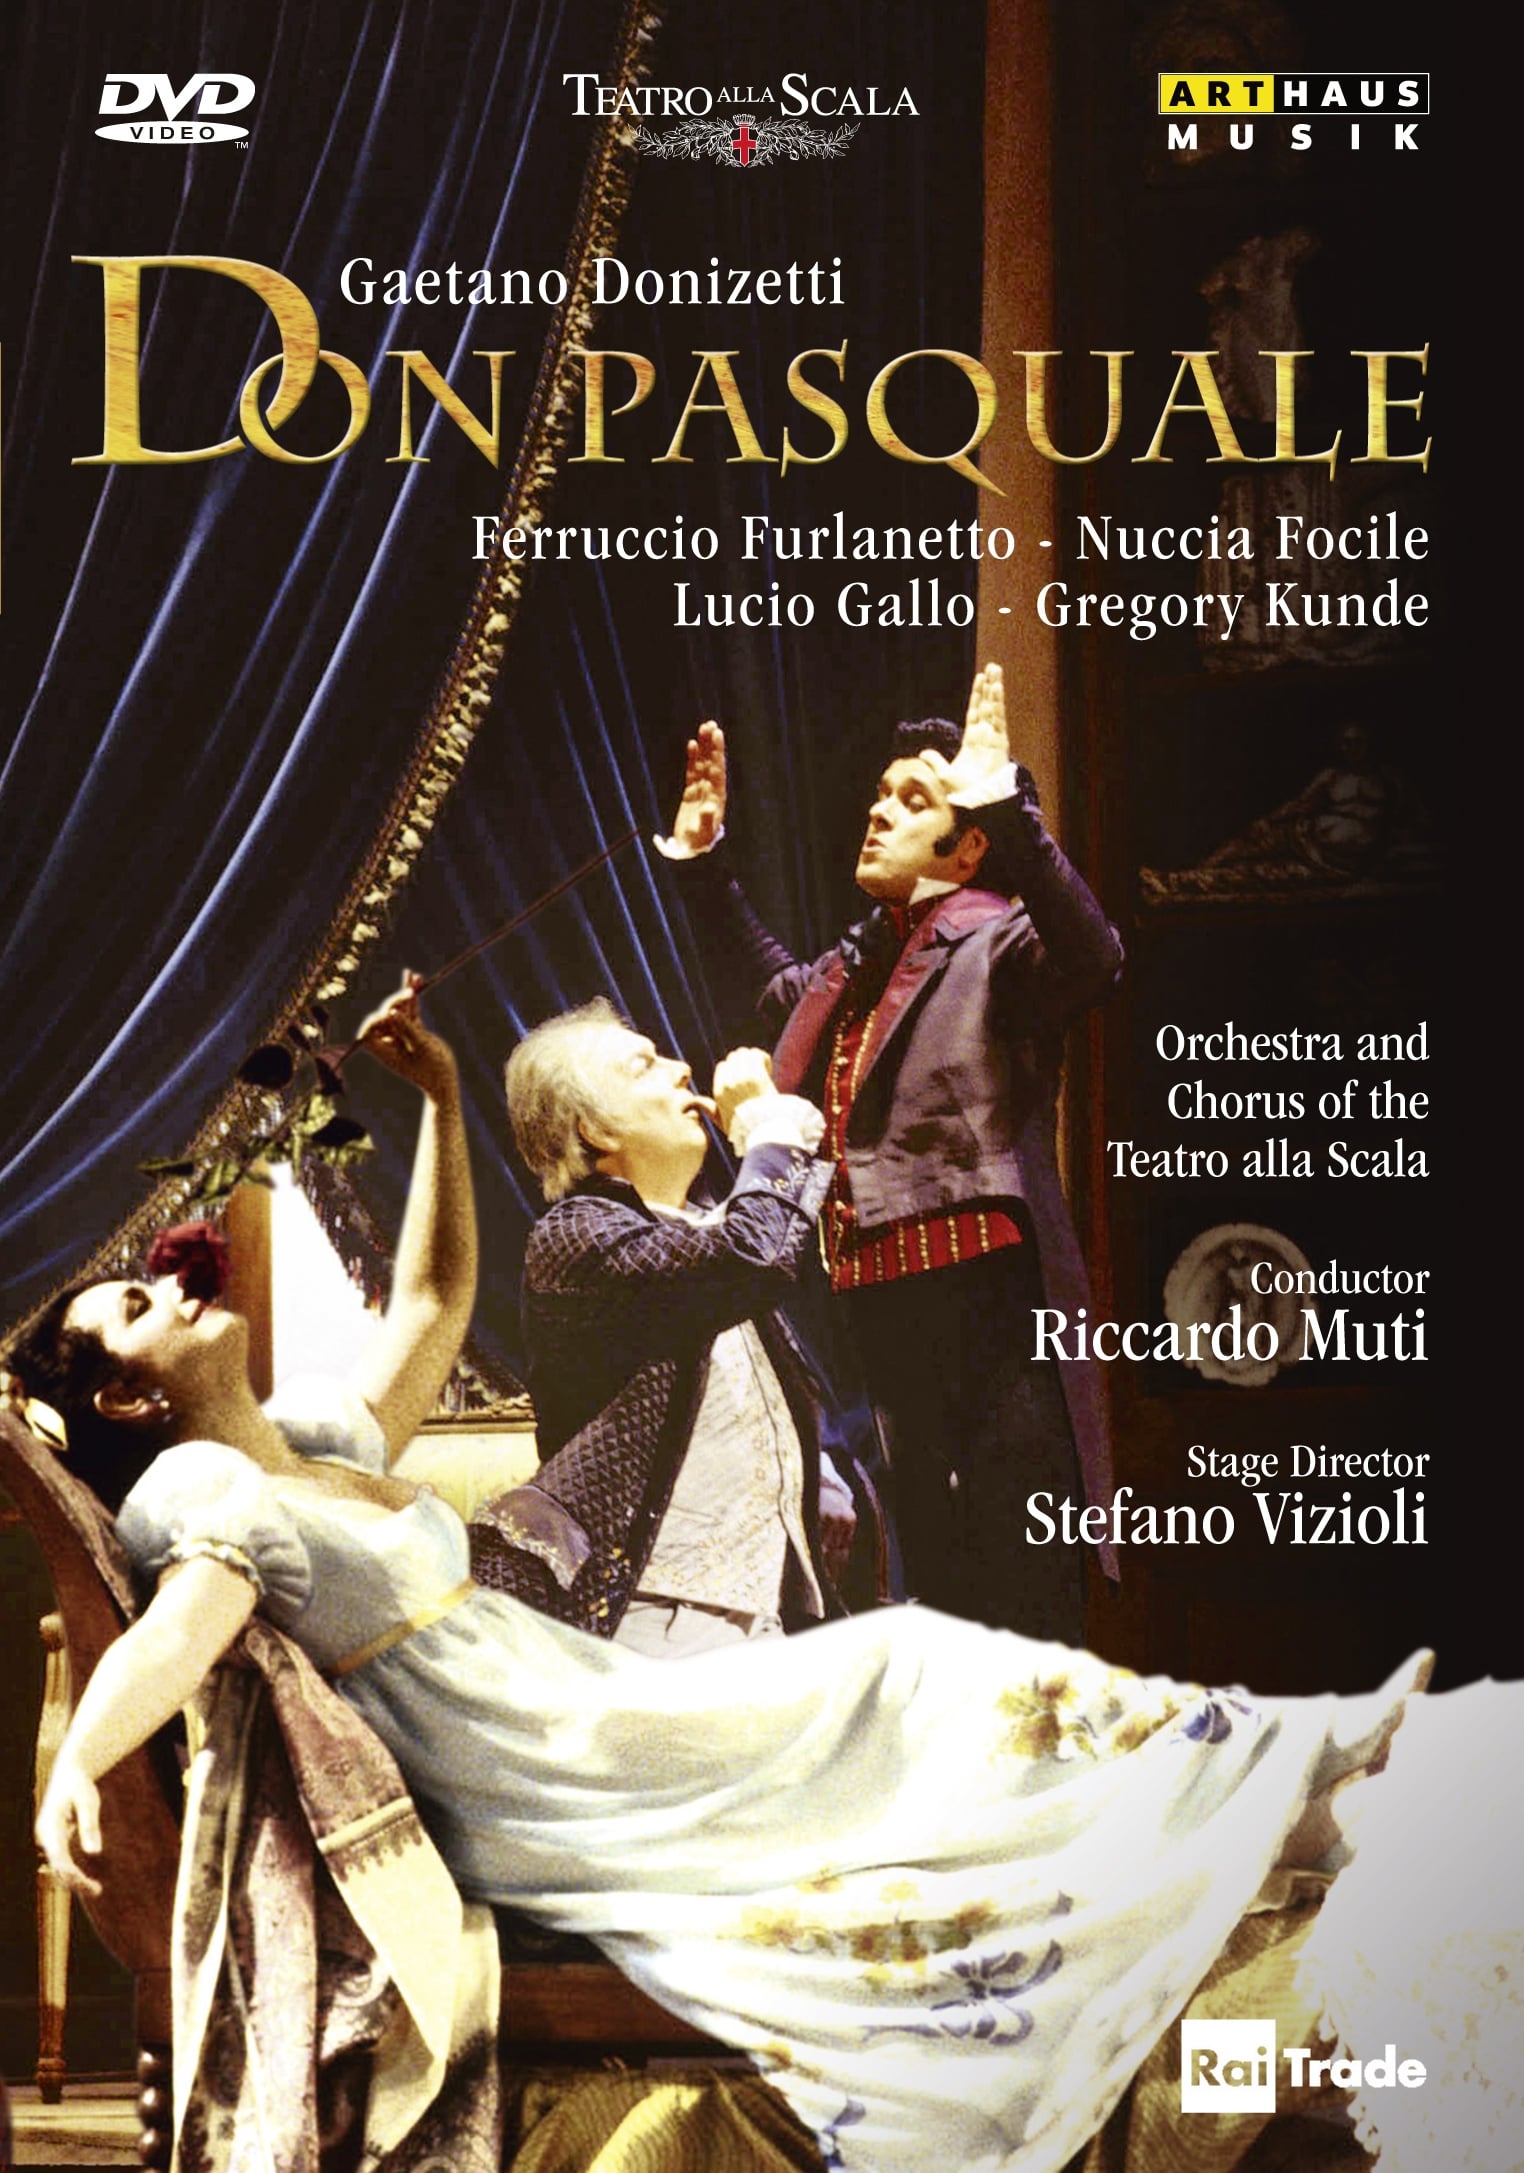 Don Pasquale - Teatro alla Scala (1994)